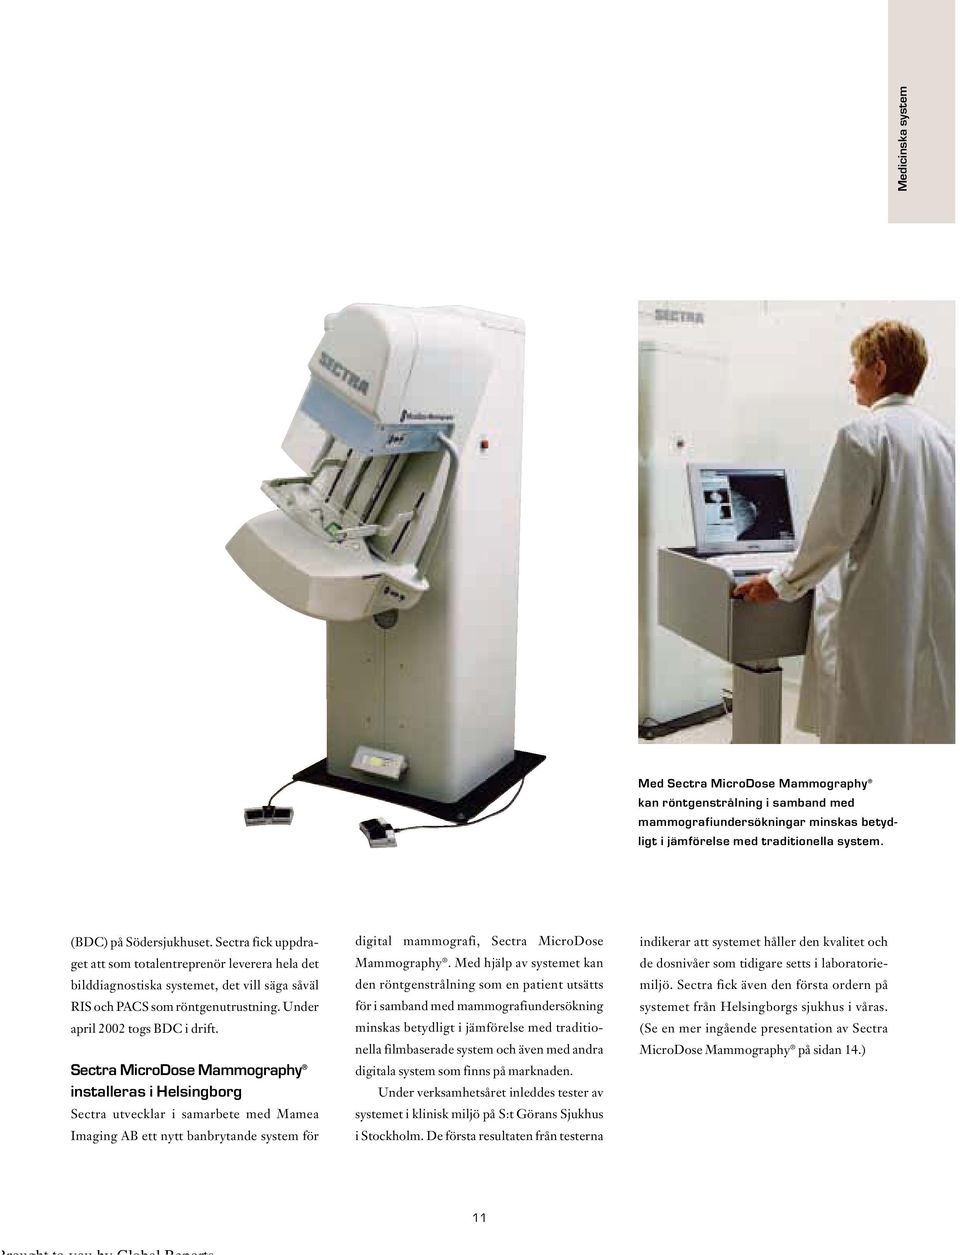 Sectra MicroDose Mammography installeras i Helsingborg Sectra utvecklar i samarbete med Mamea Imaging AB ett nytt banbrytande system för digital mammografi, Sectra MicroDose Mammography.